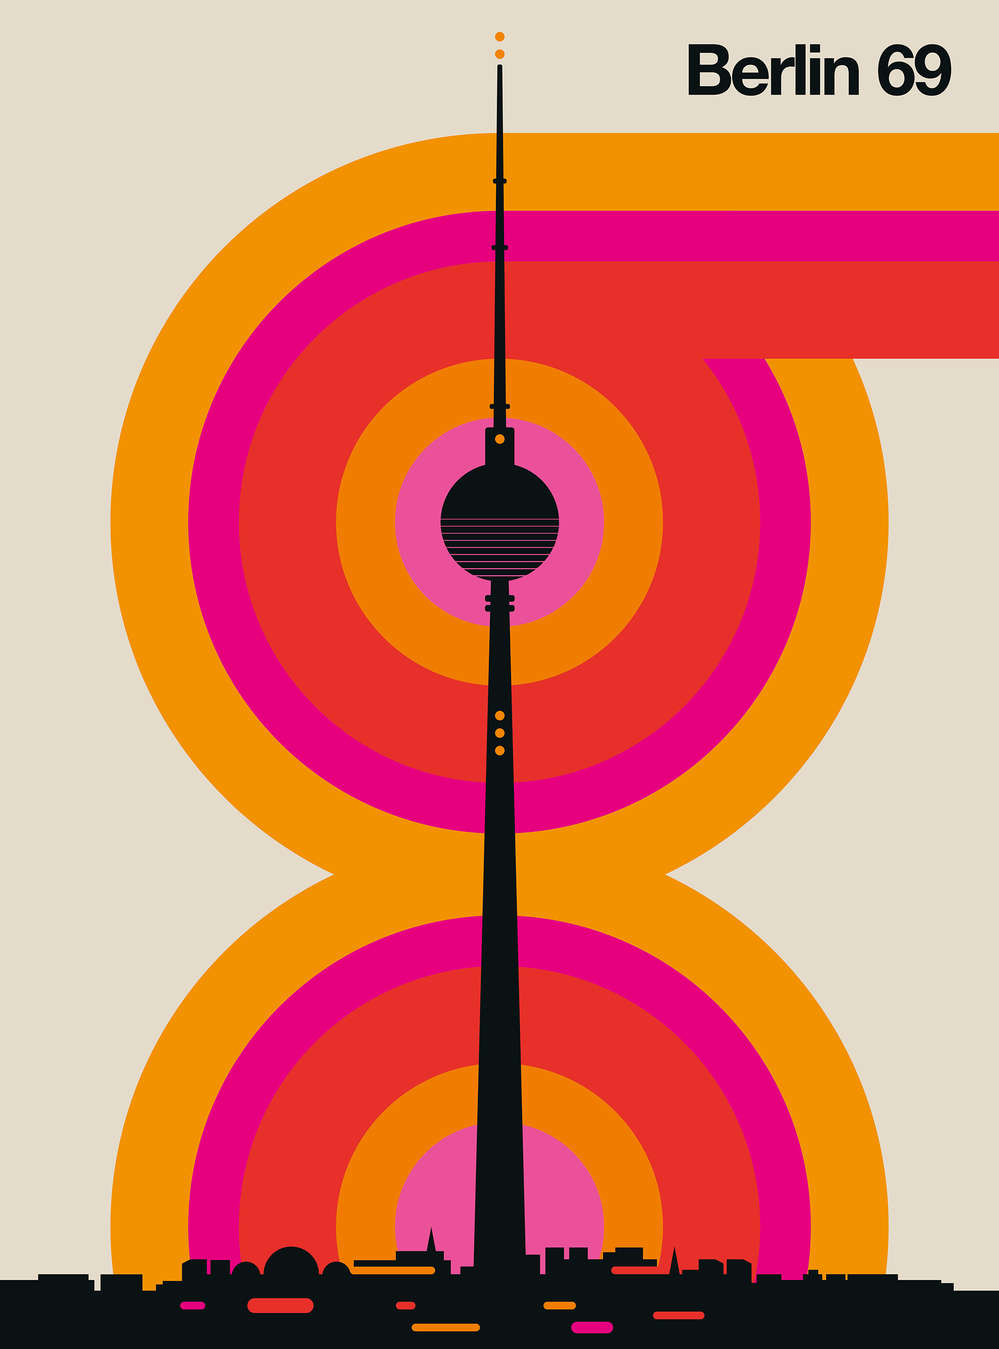             Berlijn Radio Toren Behang in 60s Retro Ontwerp
        